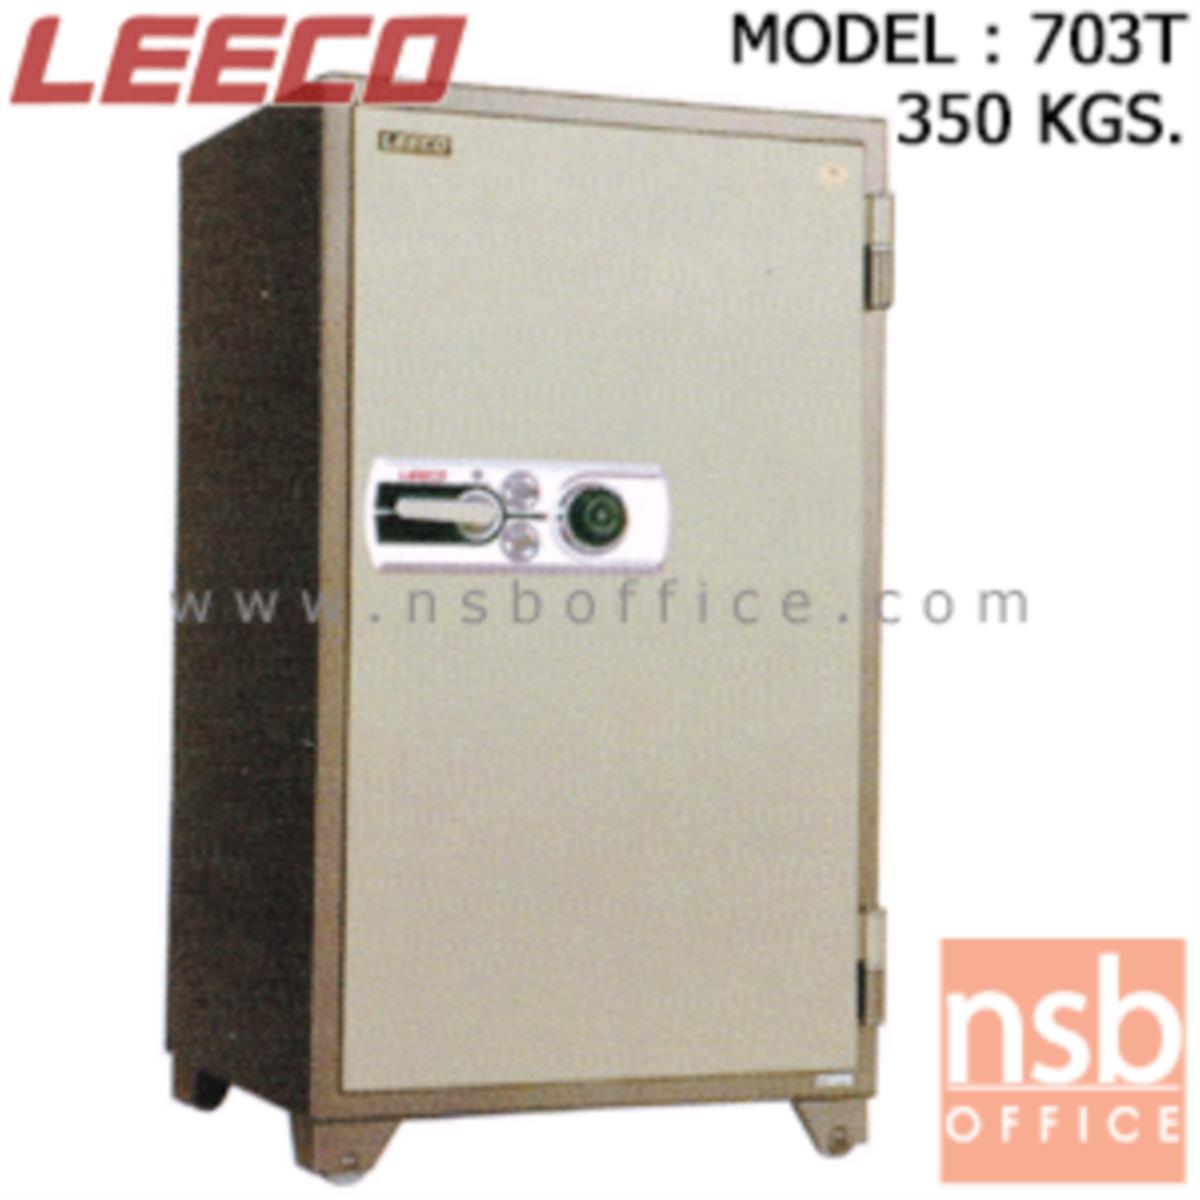 ตู้เซฟนิรภัย 350 กก. ลีโก้ รุ่น LEECO-703T มี 2 กุญแจ 1 รหัส (เปลี่ยนรหัสได้)   